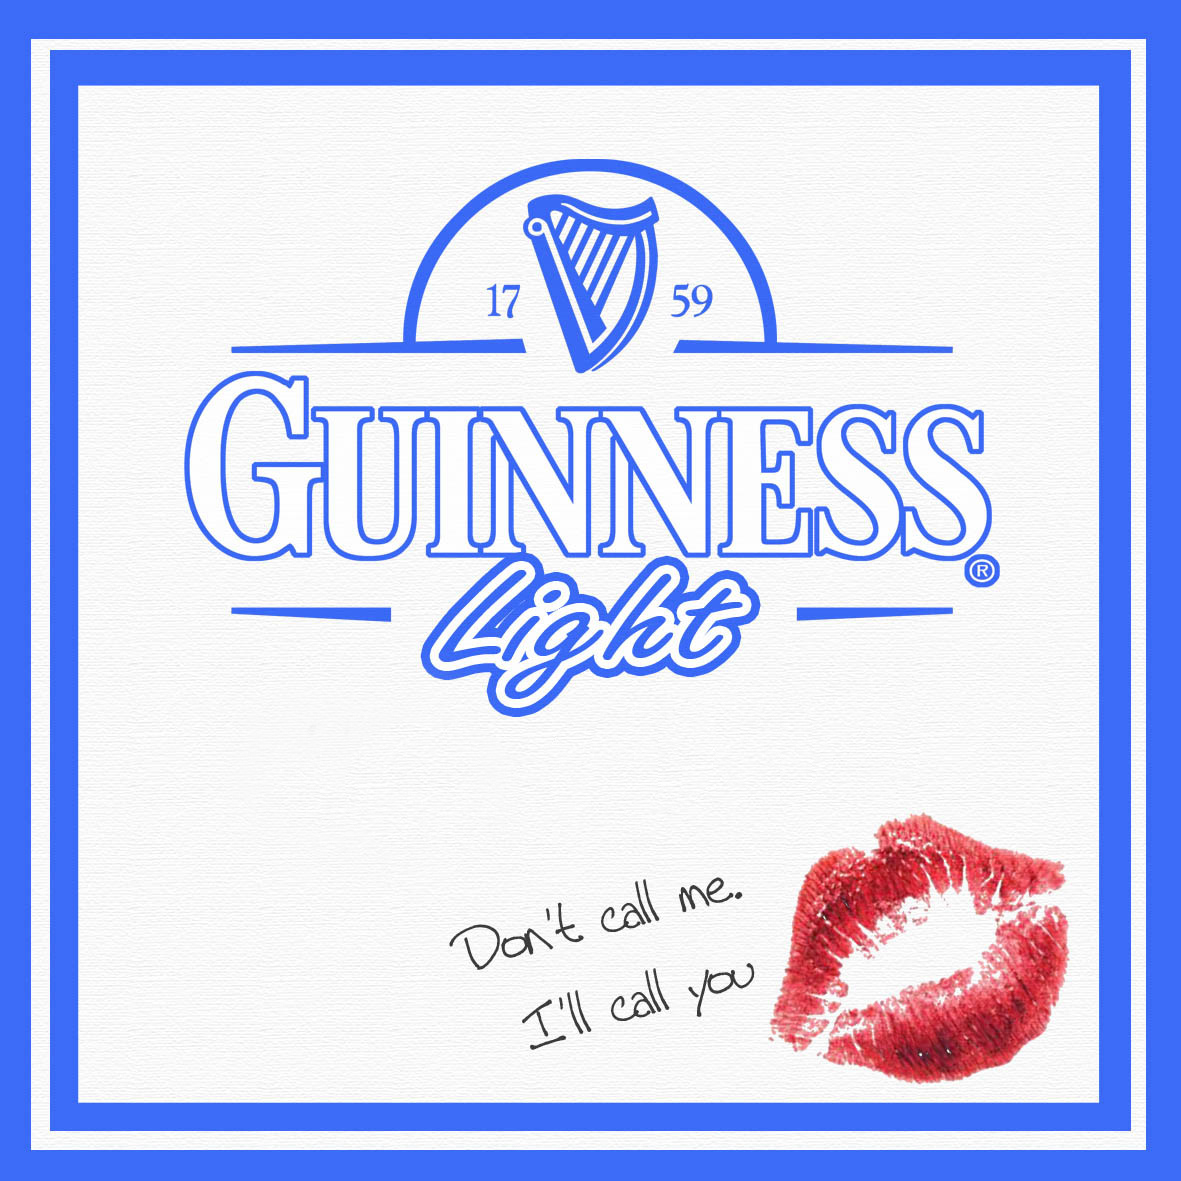 Guinness ad Guinness for women Guinness Light